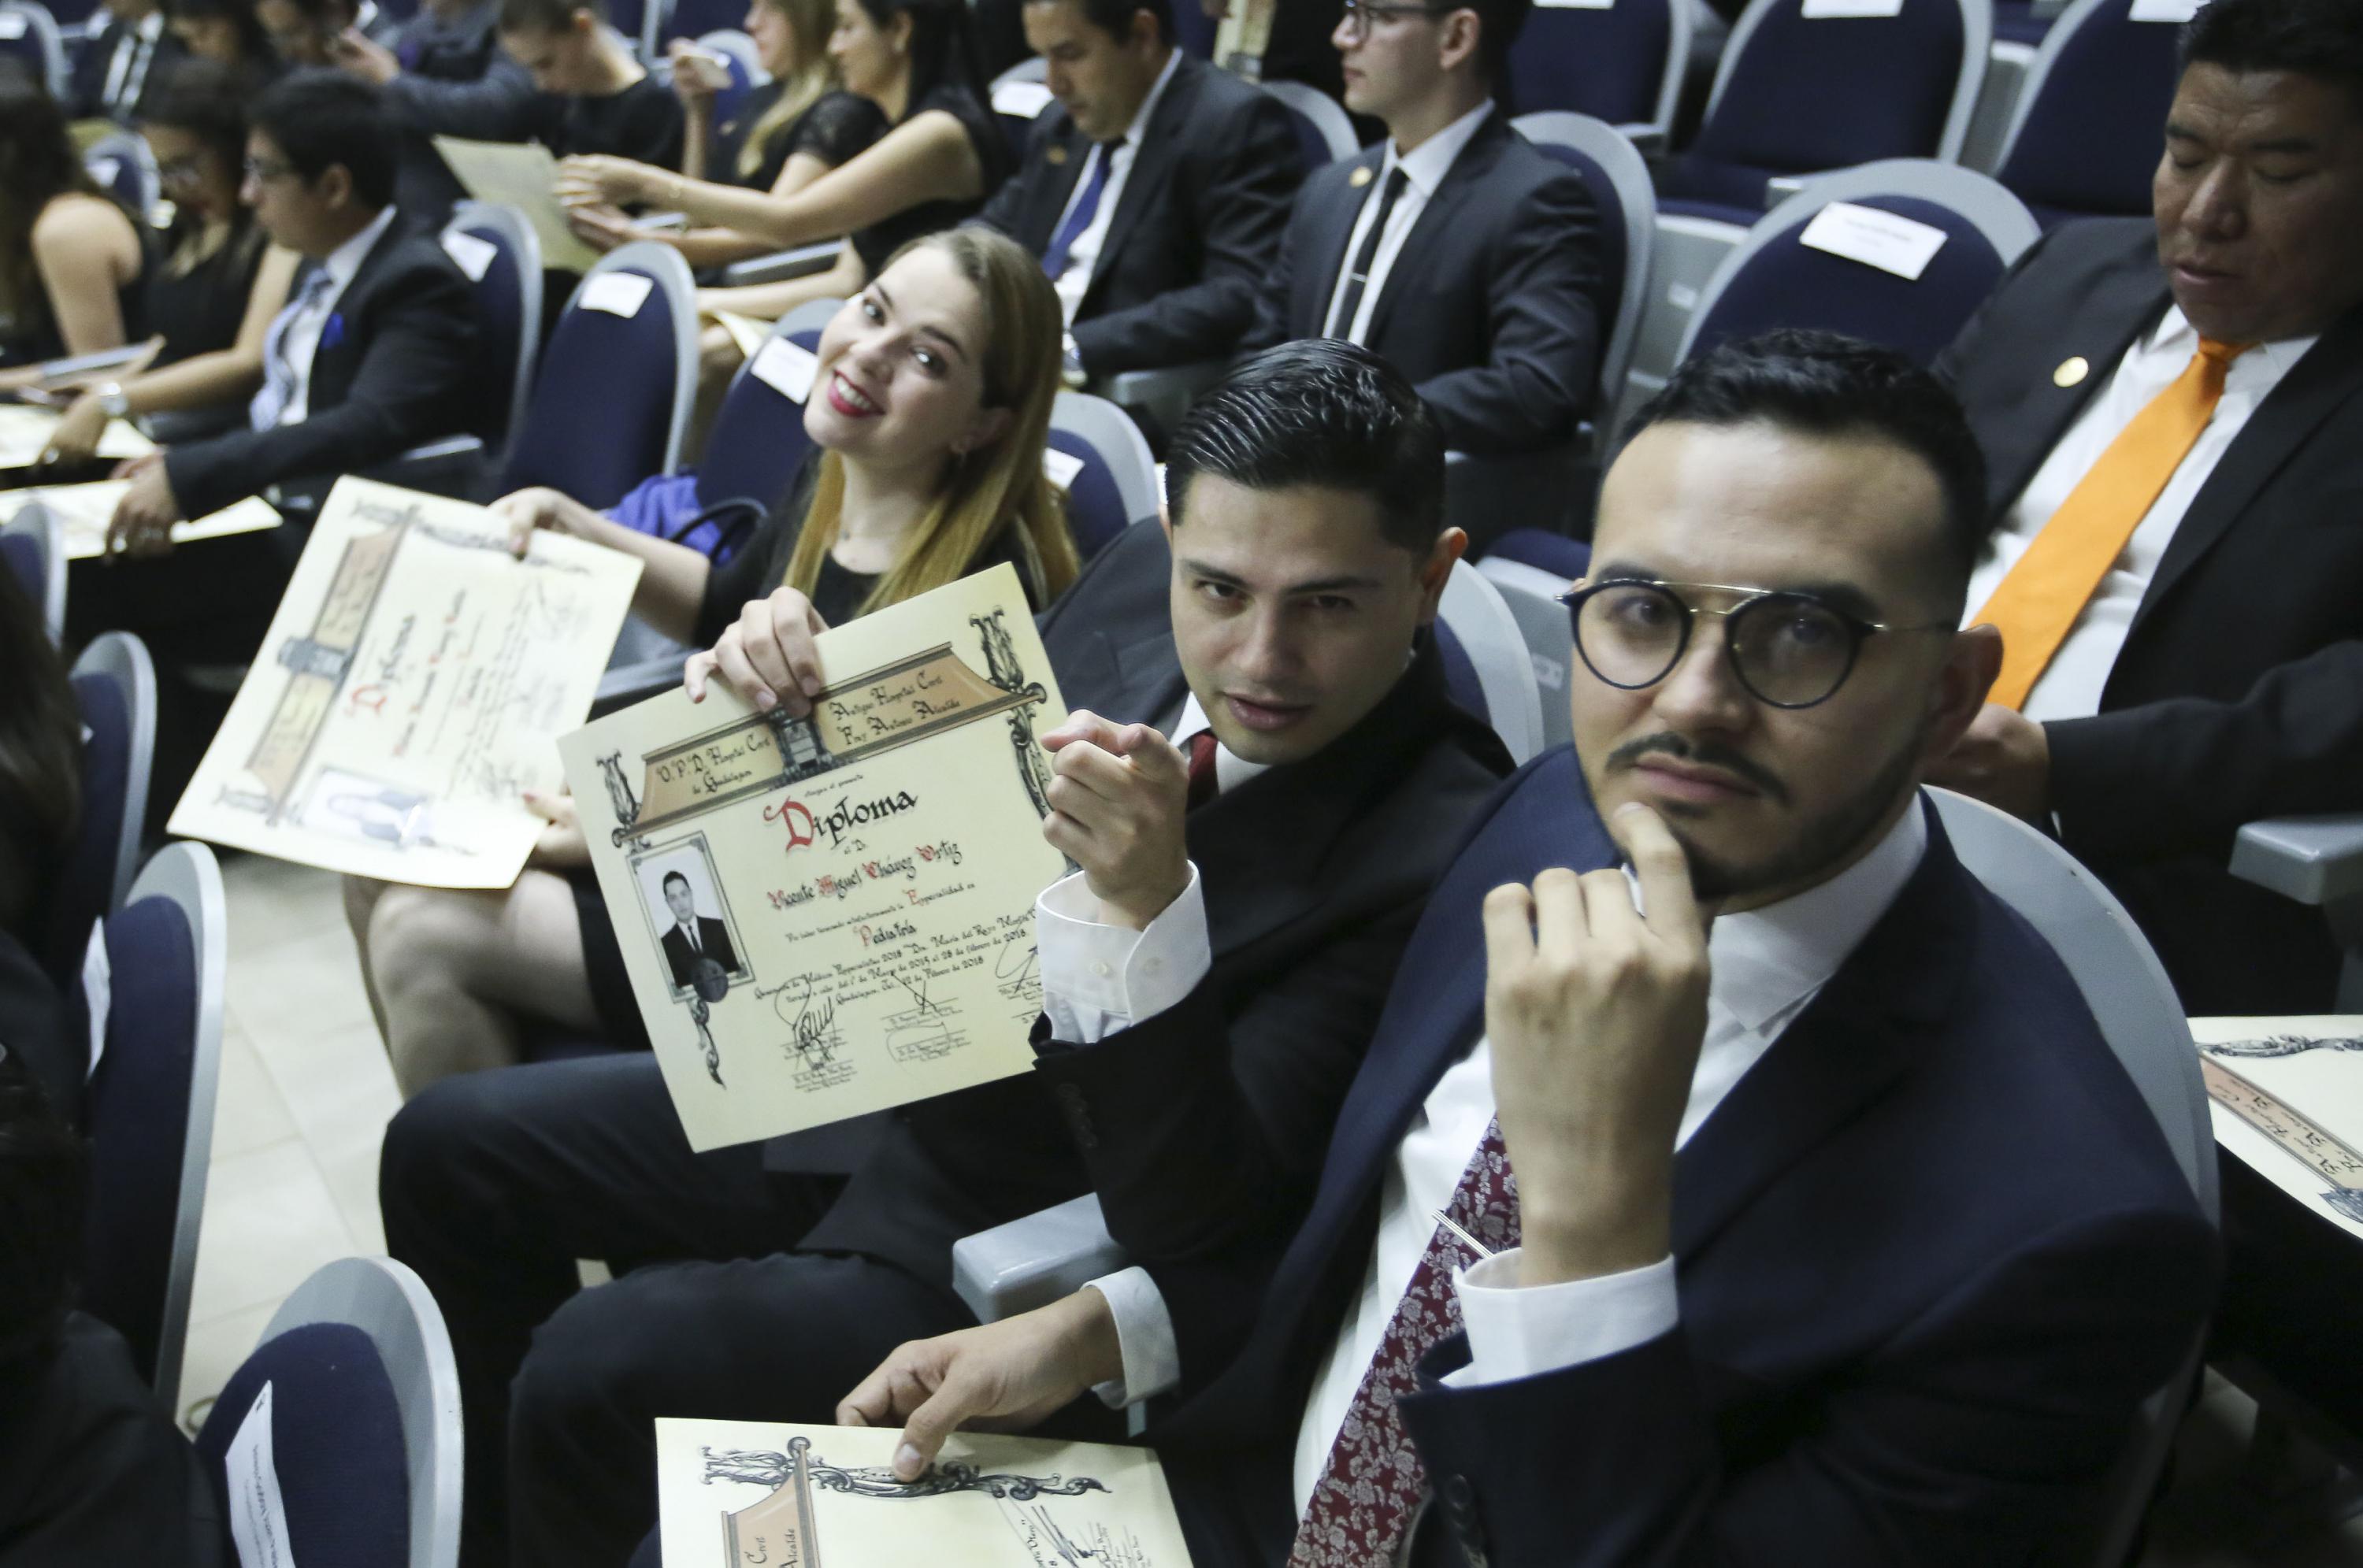 3 egresados (Una mujer y dos hombres) muestran su diploma de acreditación